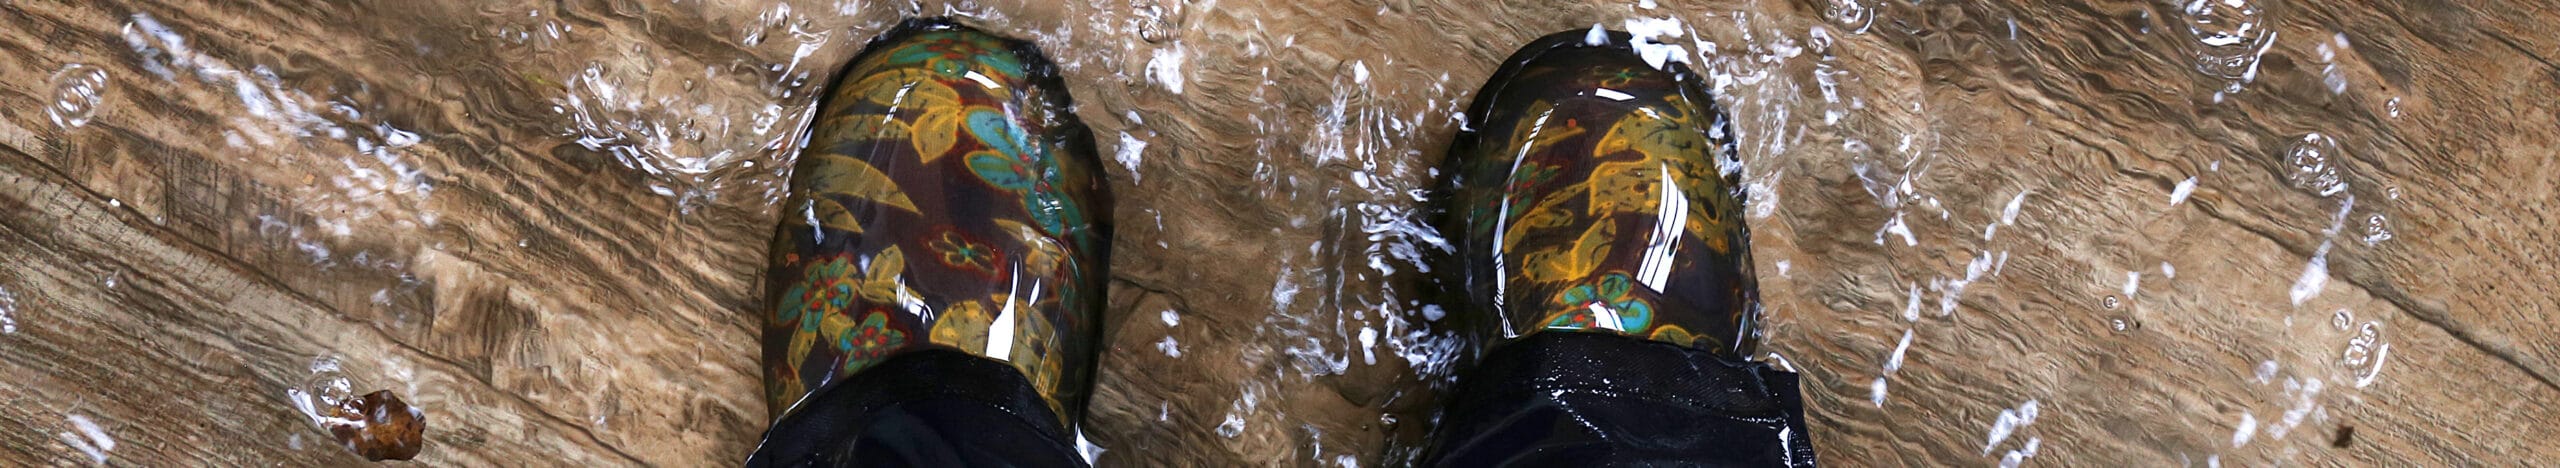 Une personne portant des bottes de pluie durant une inondation